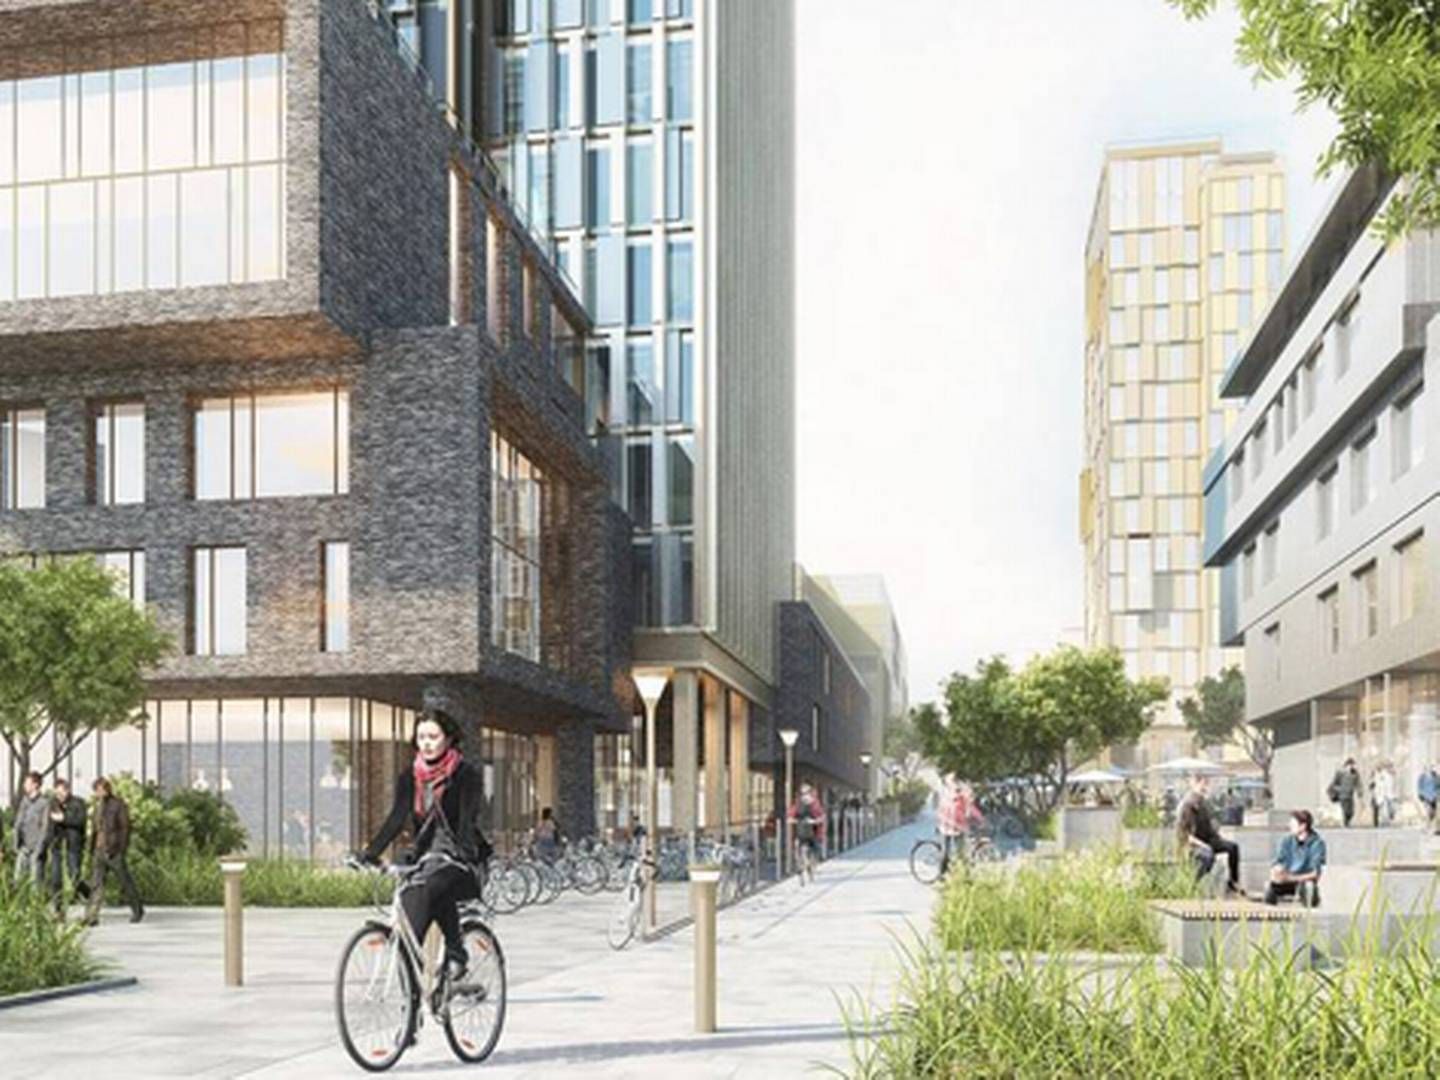 Et projekt for Katrinebjerg, der netop nu er i høring, inkluderer et langt strøg for cykler og gående i niveauforskydelser, højhuse, campus og private boliger. | Foto: PR-illustration